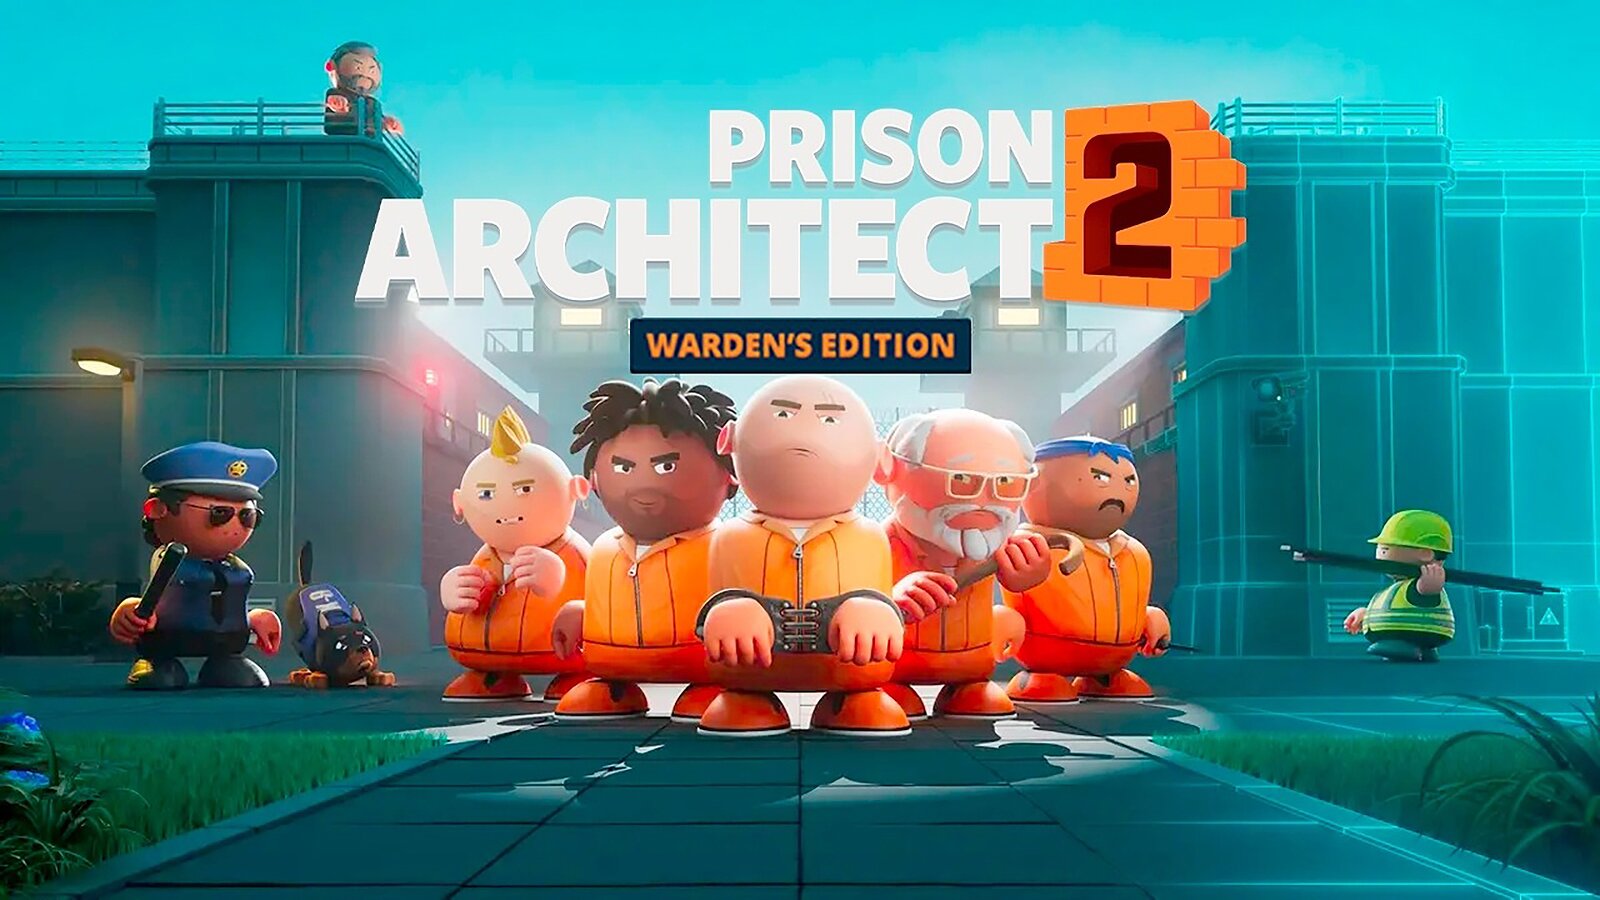 Prison Architect 2: Warden’s Edition